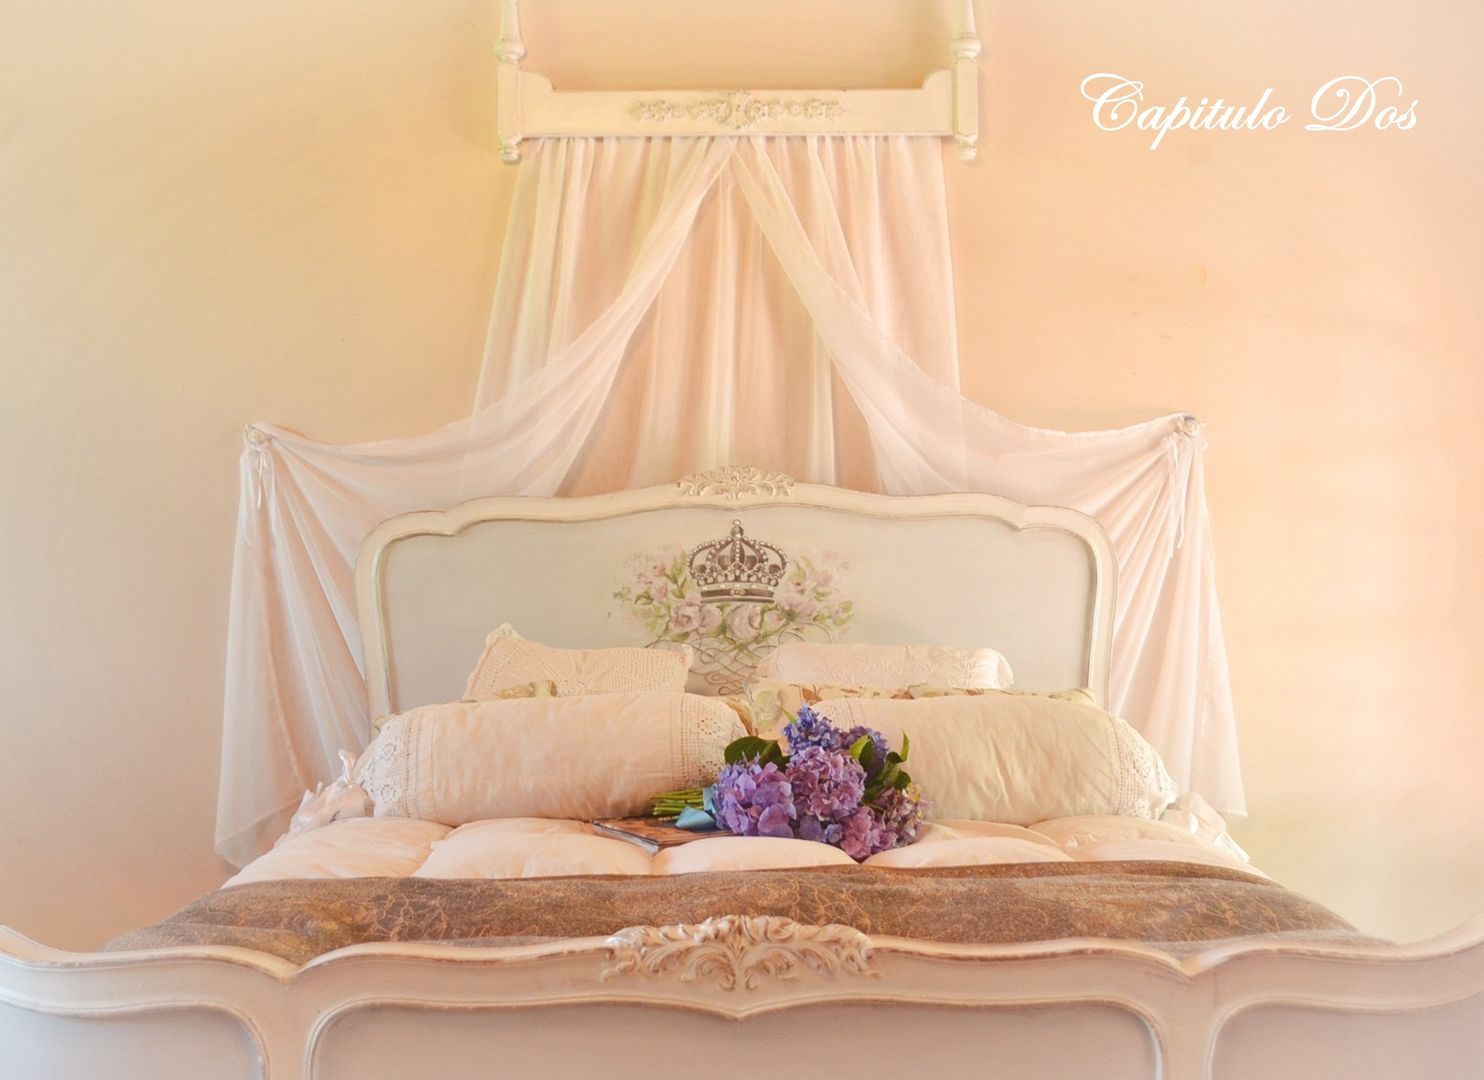 Colección 2016, Capítulo Dos Capítulo Dos Classic style bedroom Solid Wood Multicolored Beds & headboards